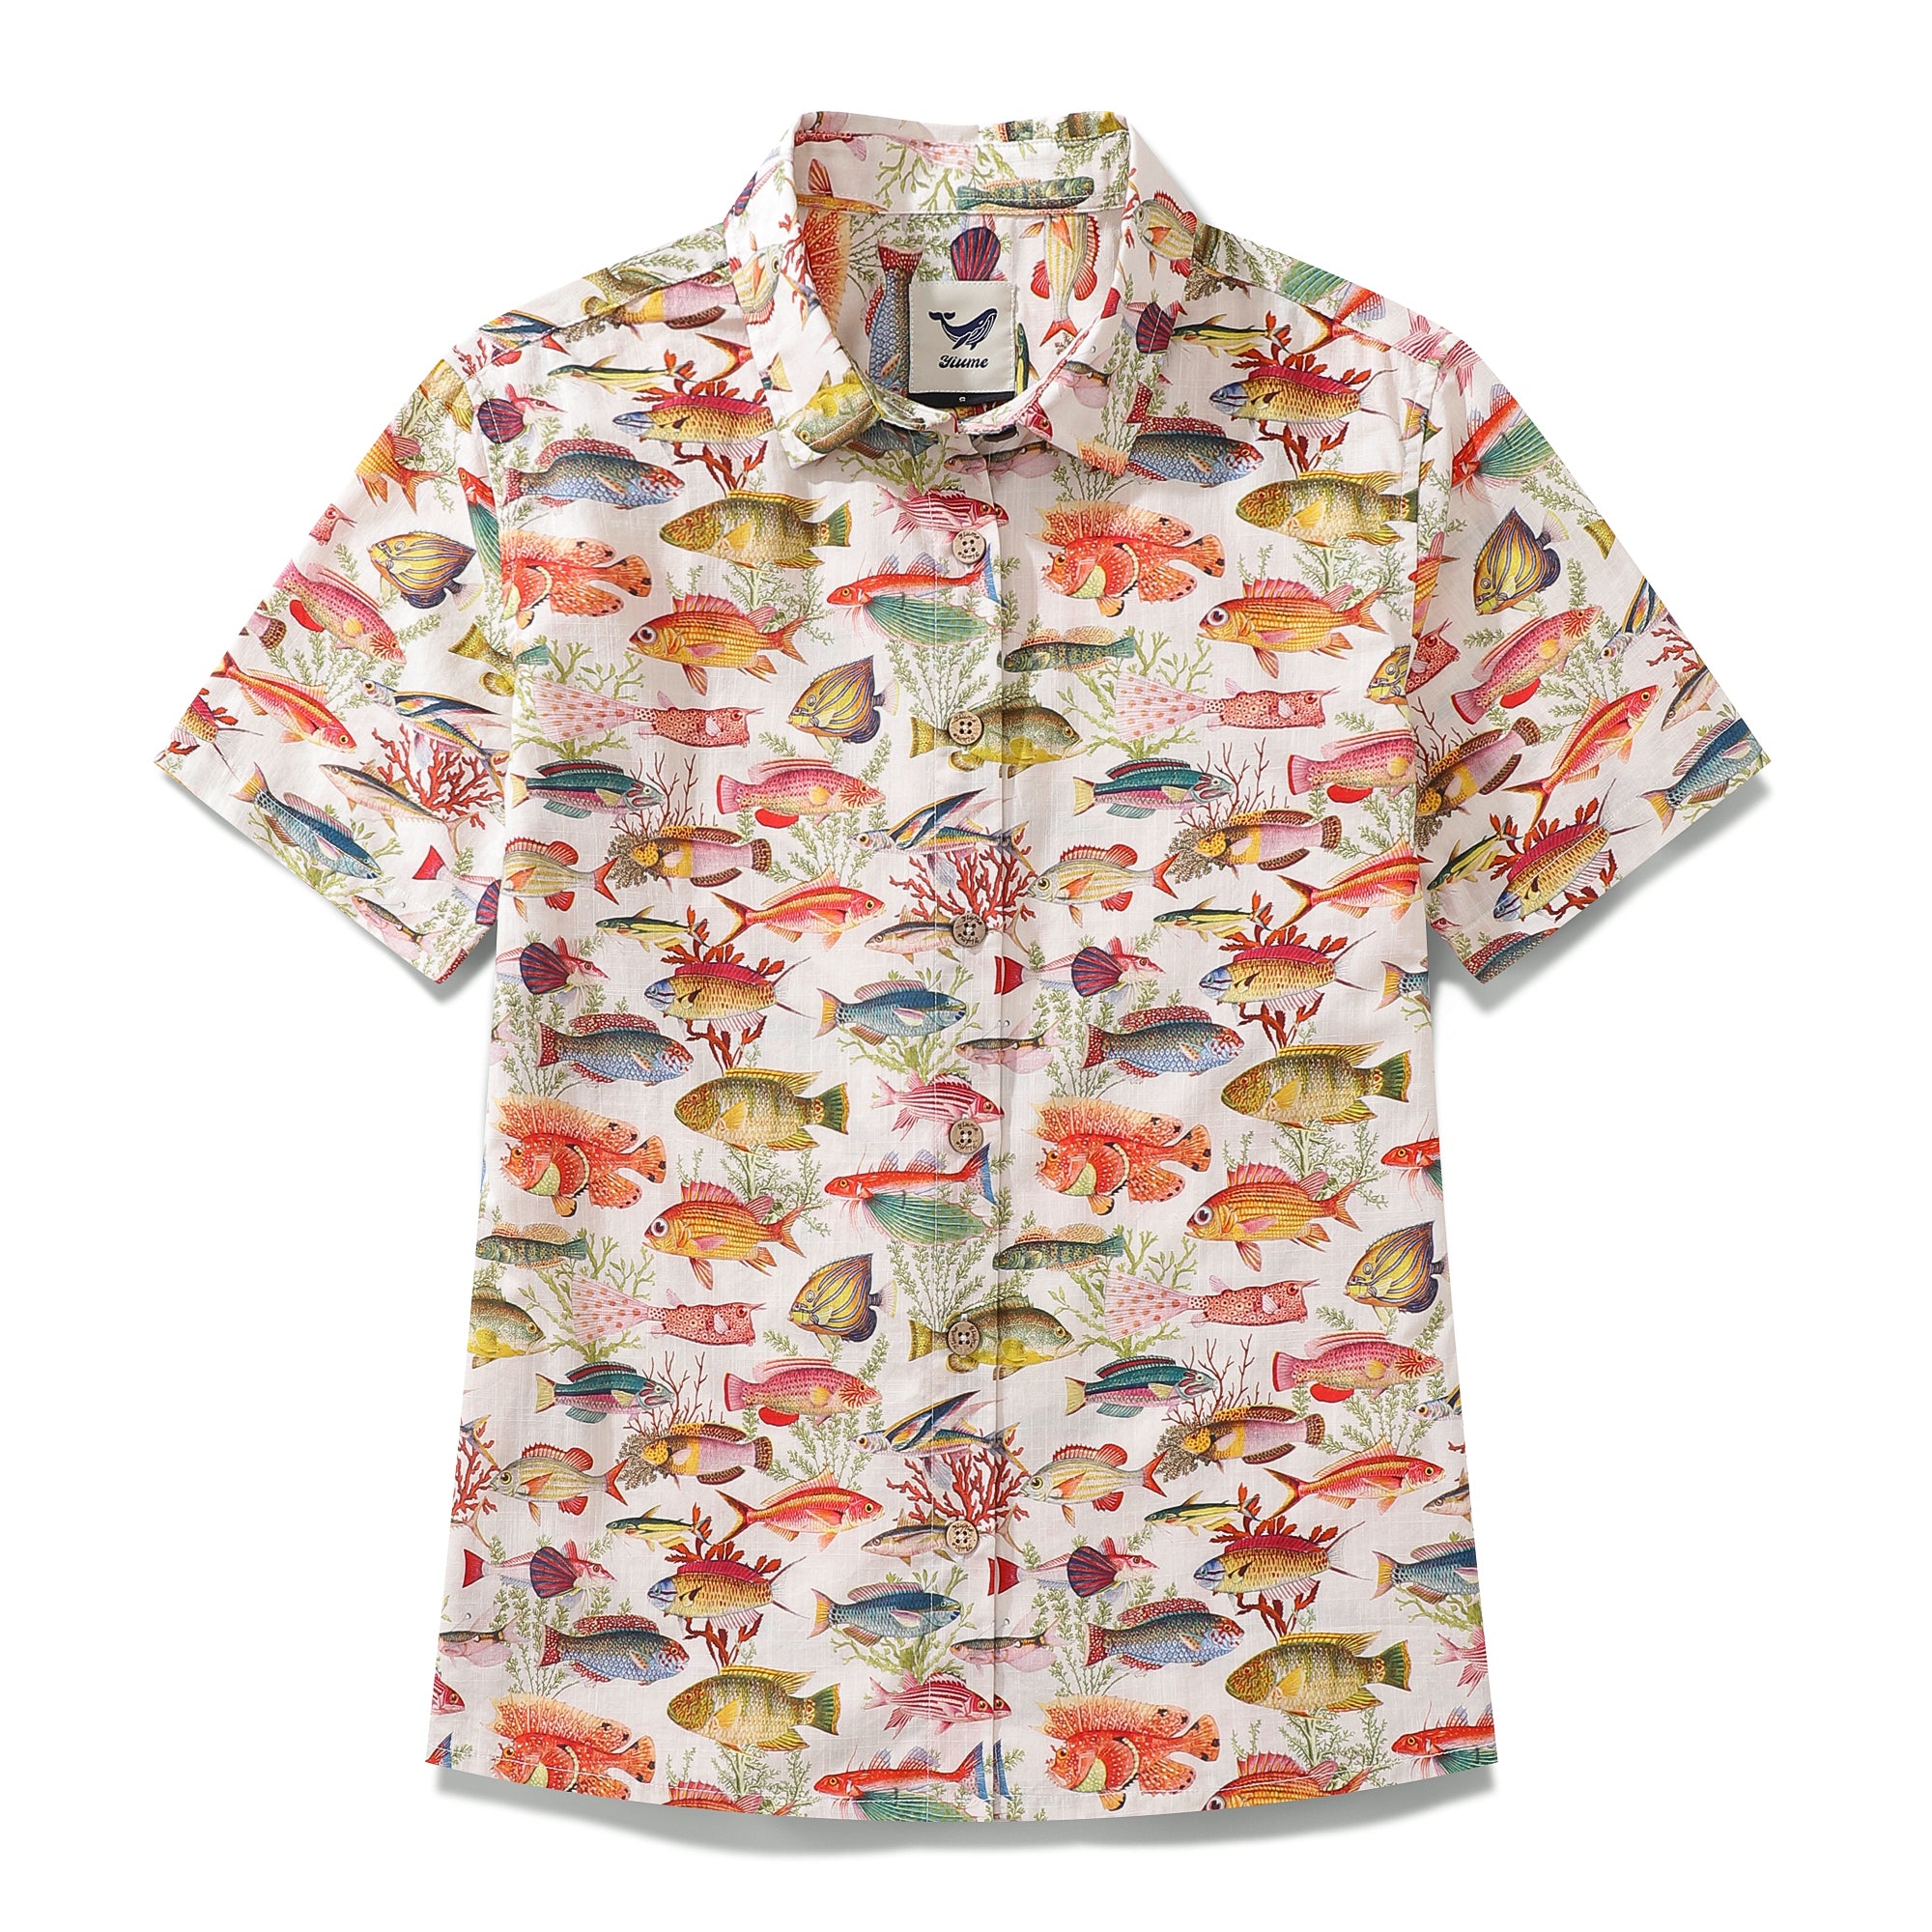 Damen-Hawaiihemd mit Meeres- und Fischmotiv, Baumwolle, kurzärmlig, mit Knopfleiste